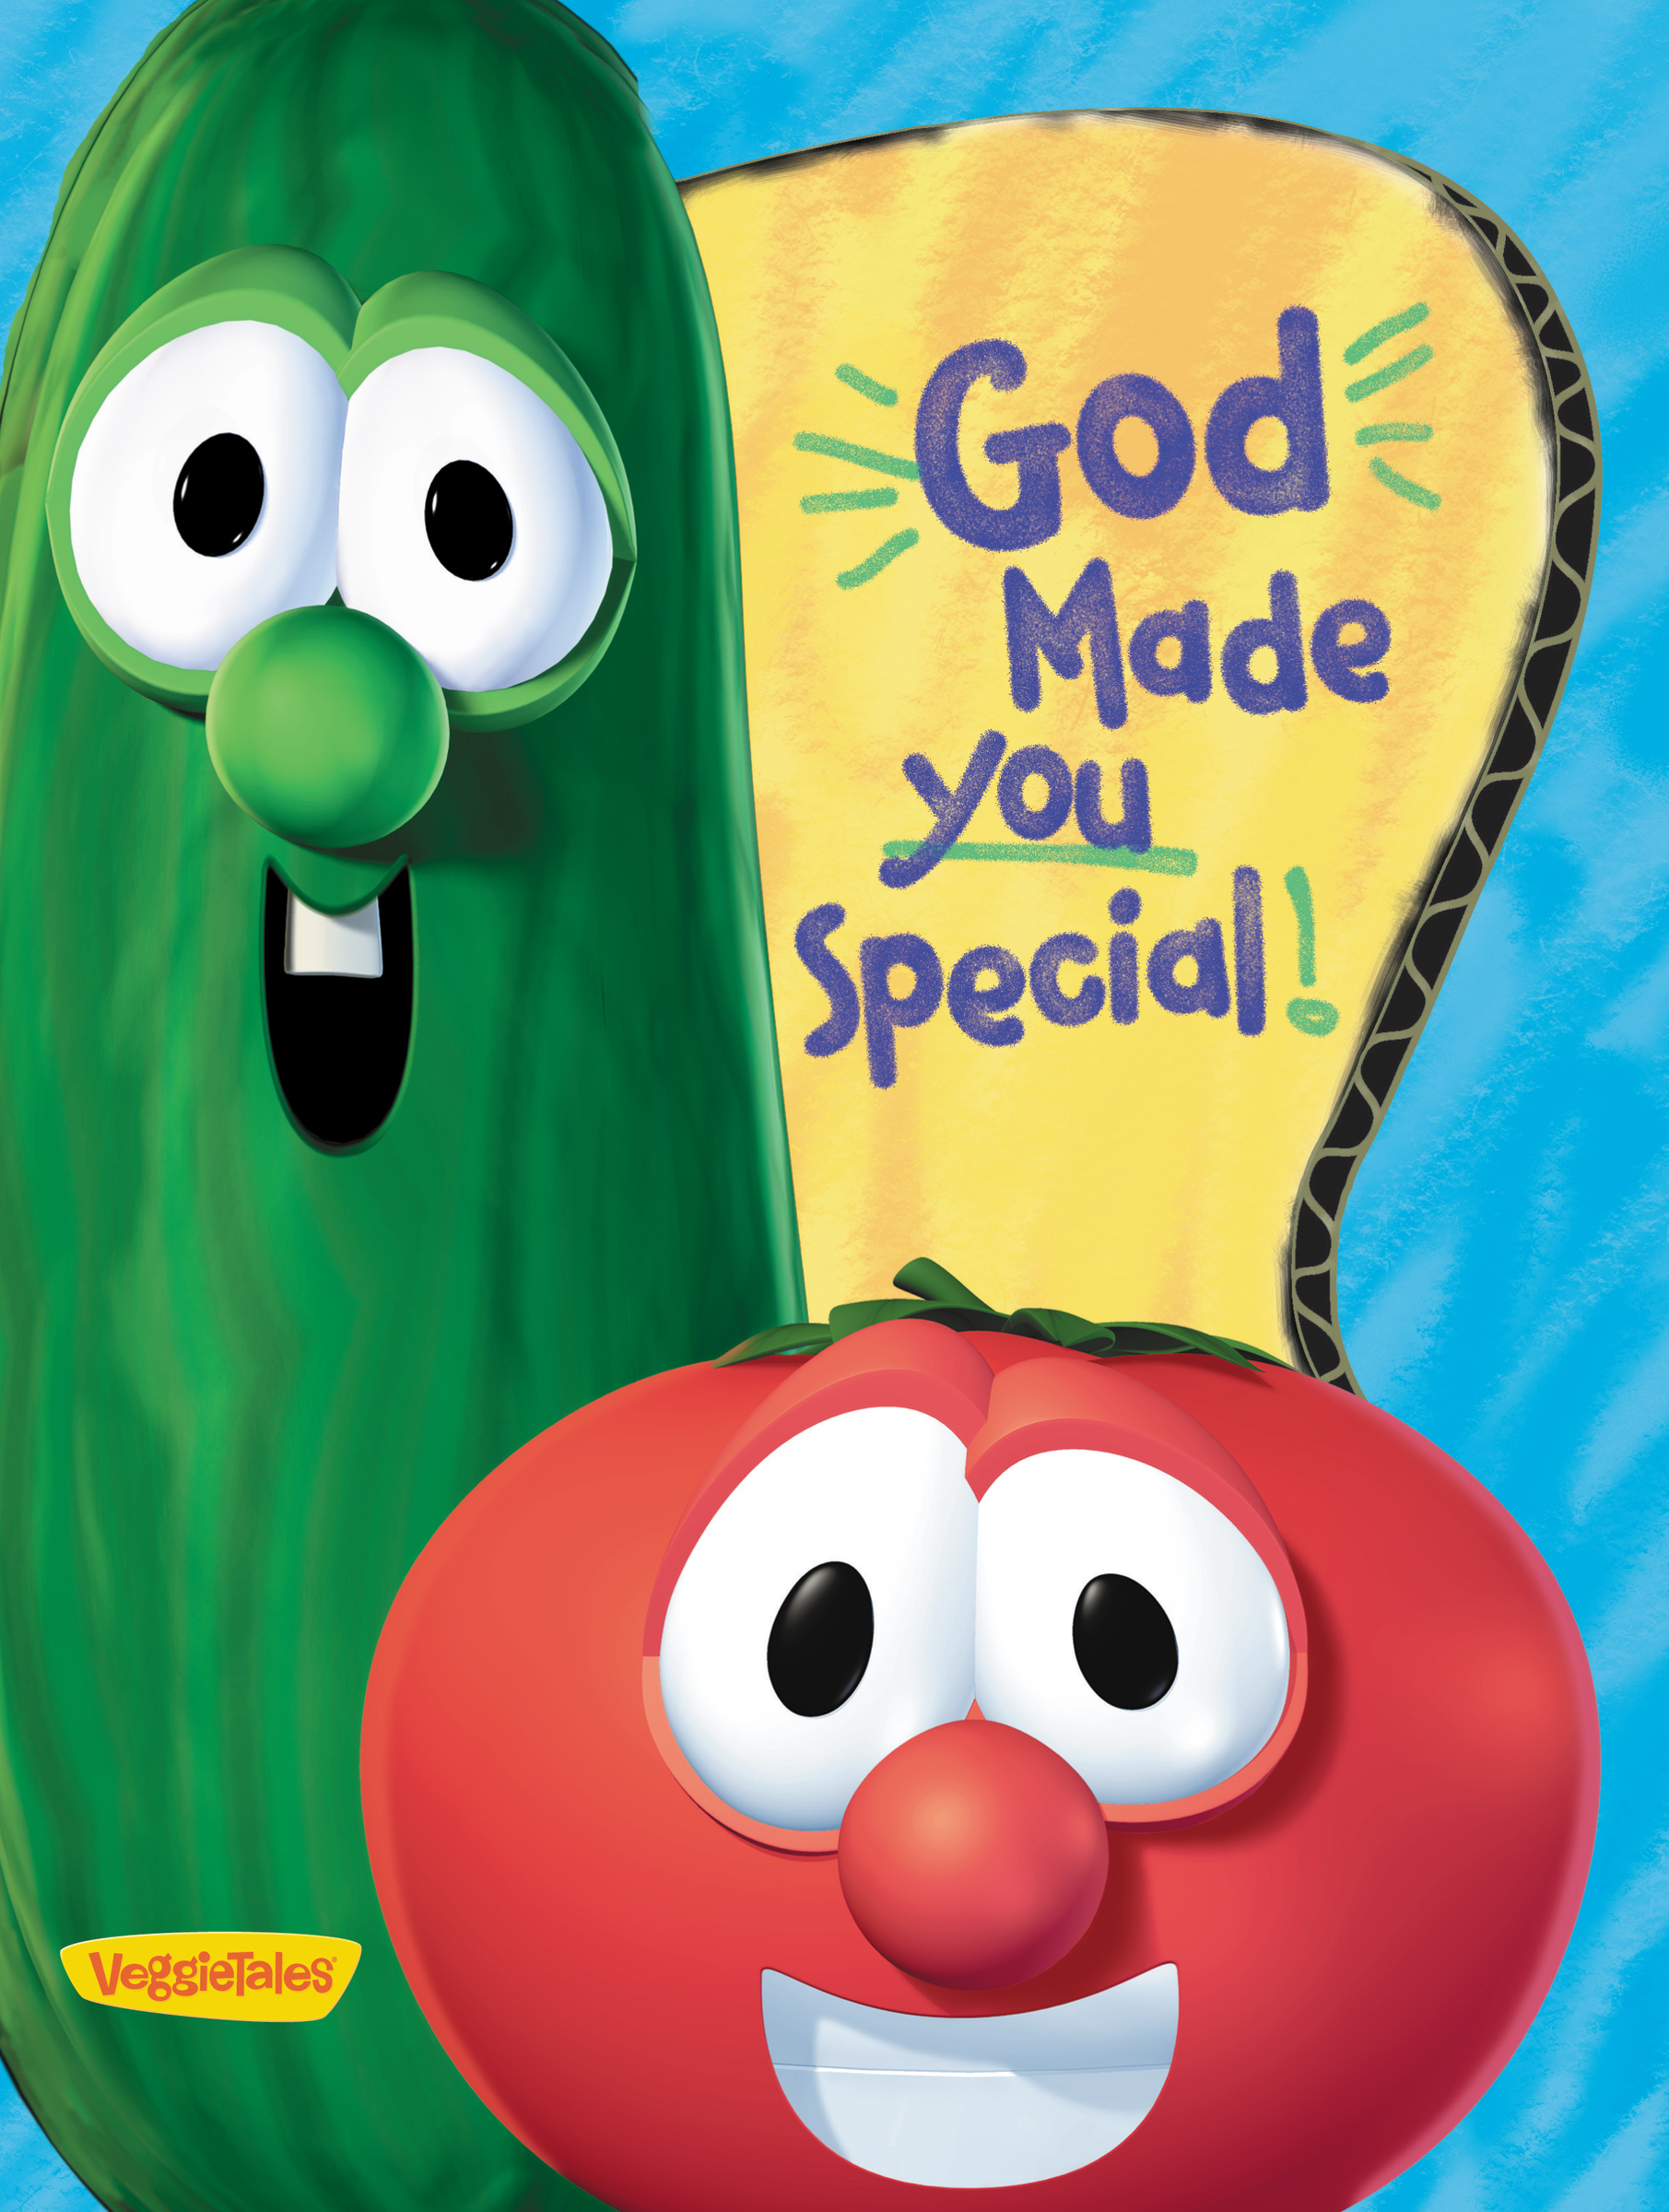 God made you special / VeggieTales cover image